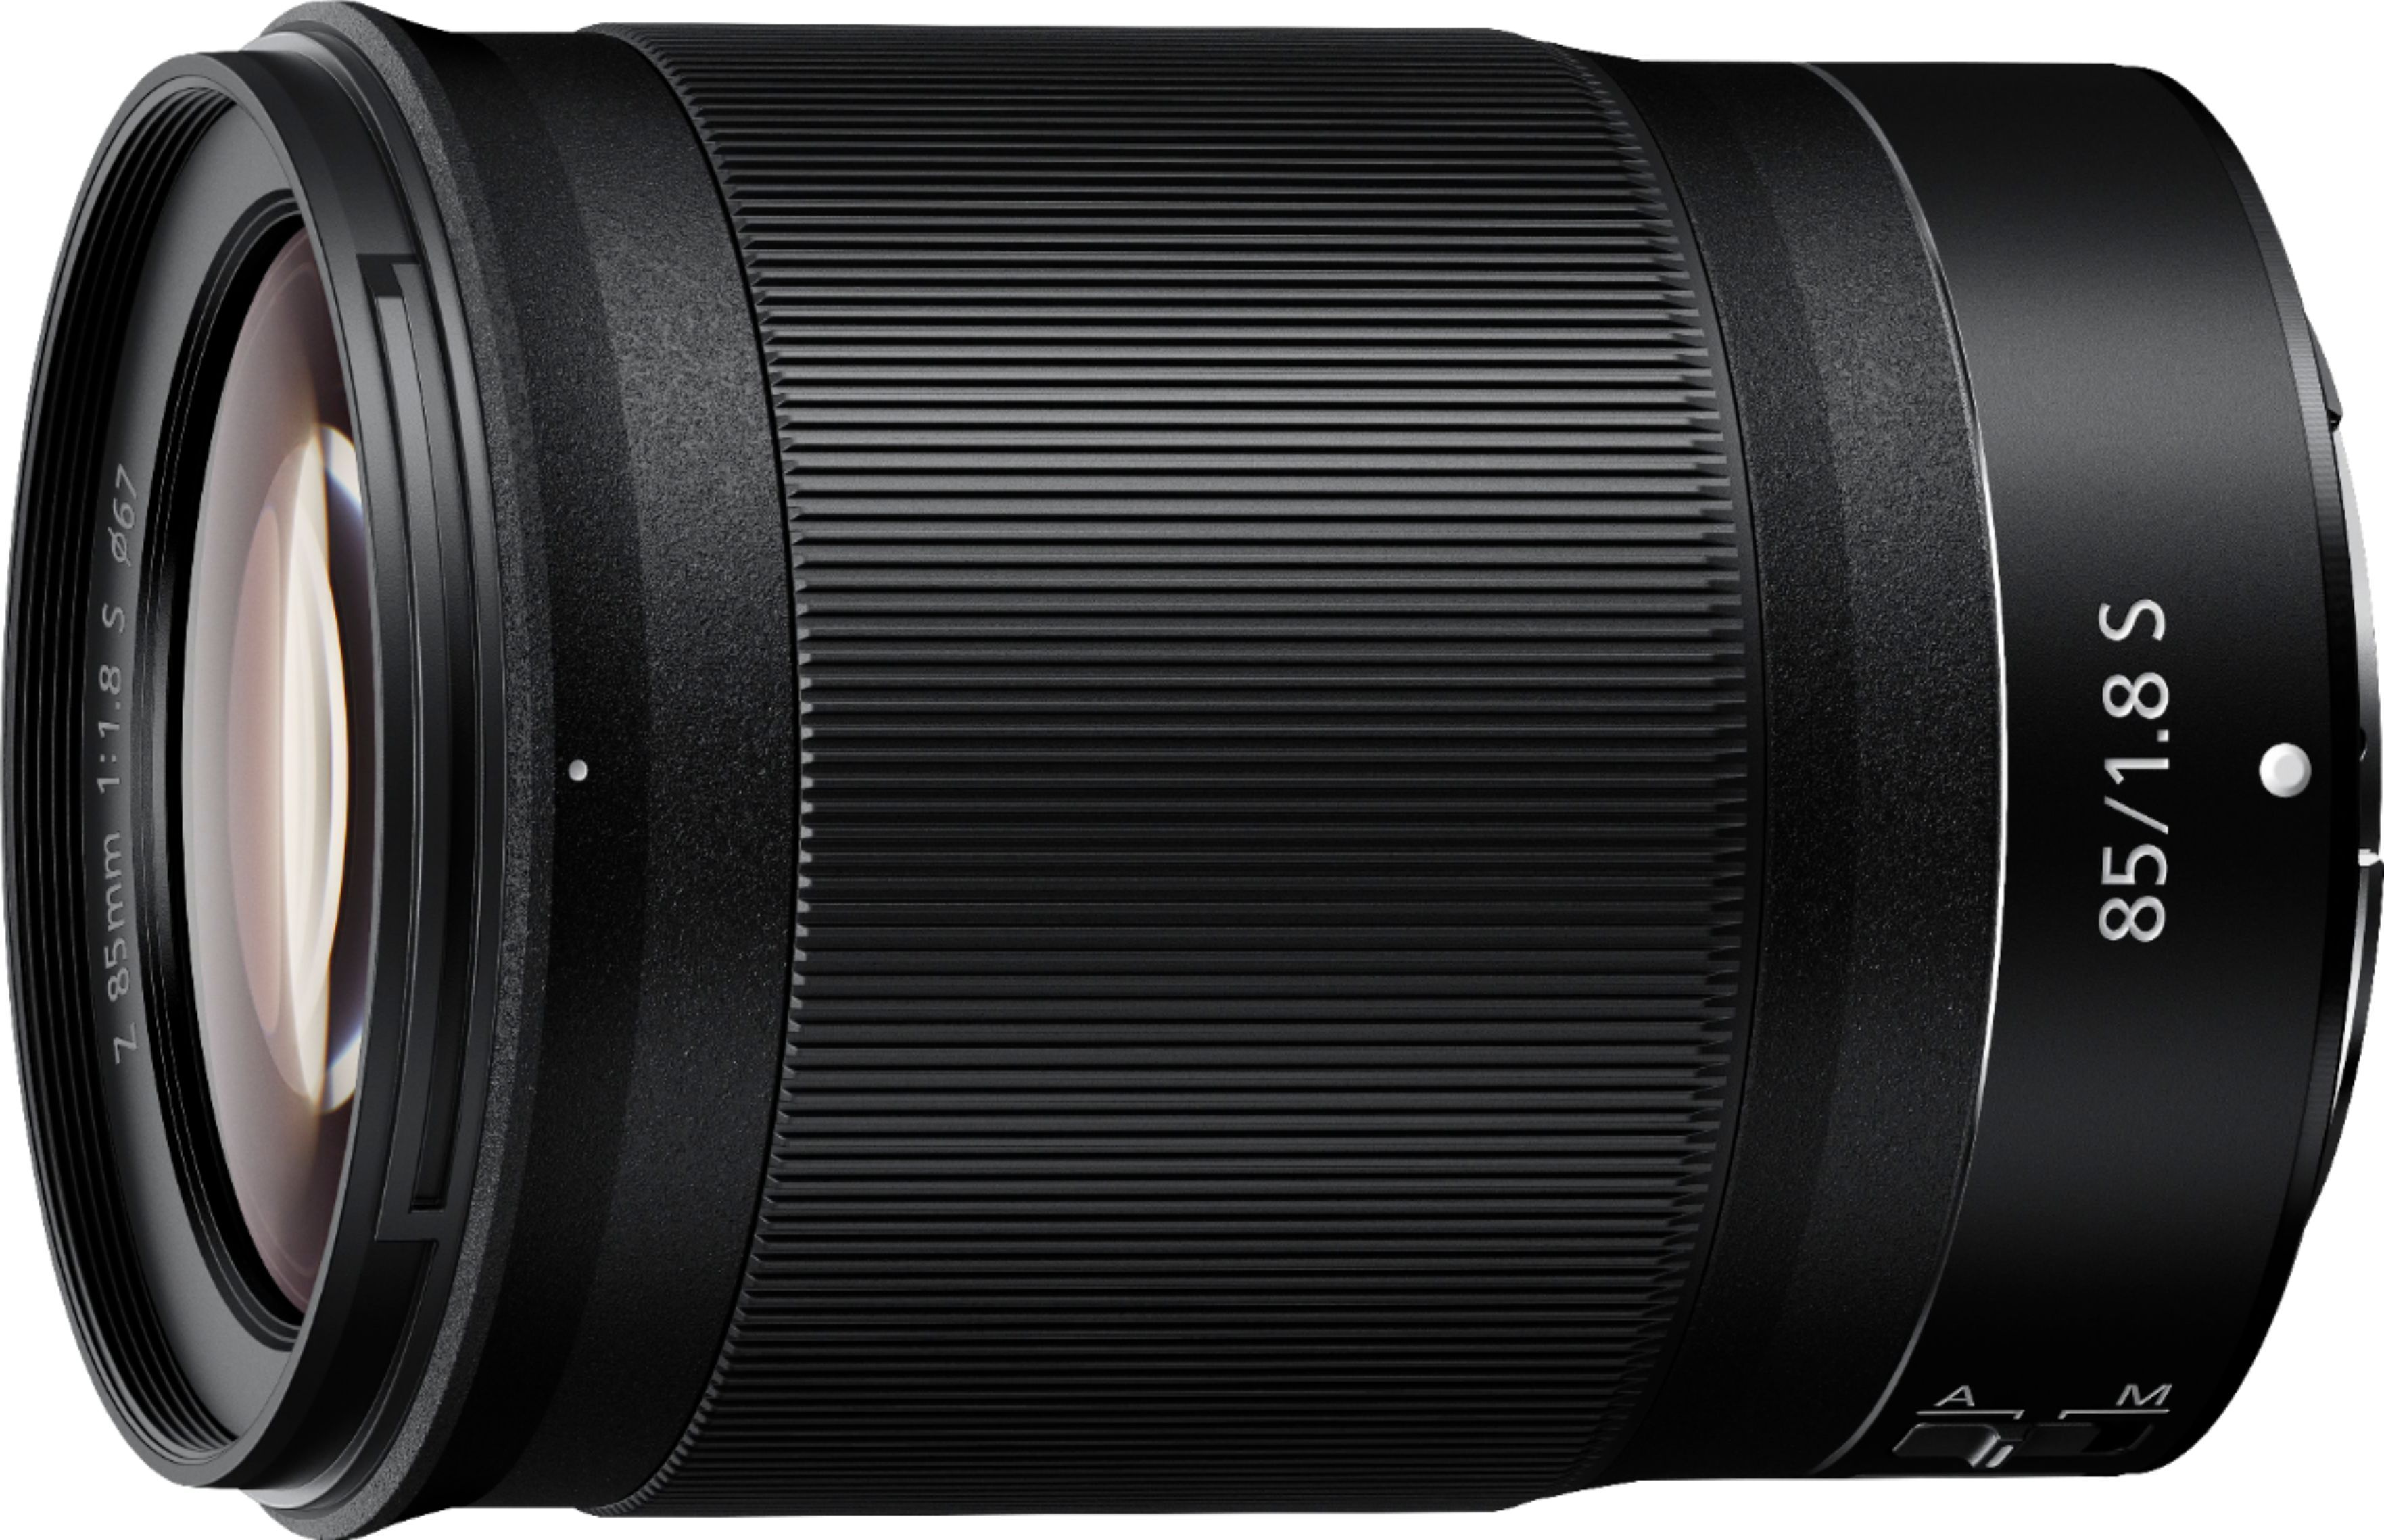 NIKKOR Z 85mm f/1.8 S Telephoto Lens for Nikon Z Cameras Black 20090 - Best Buy | Best Buy U.S.